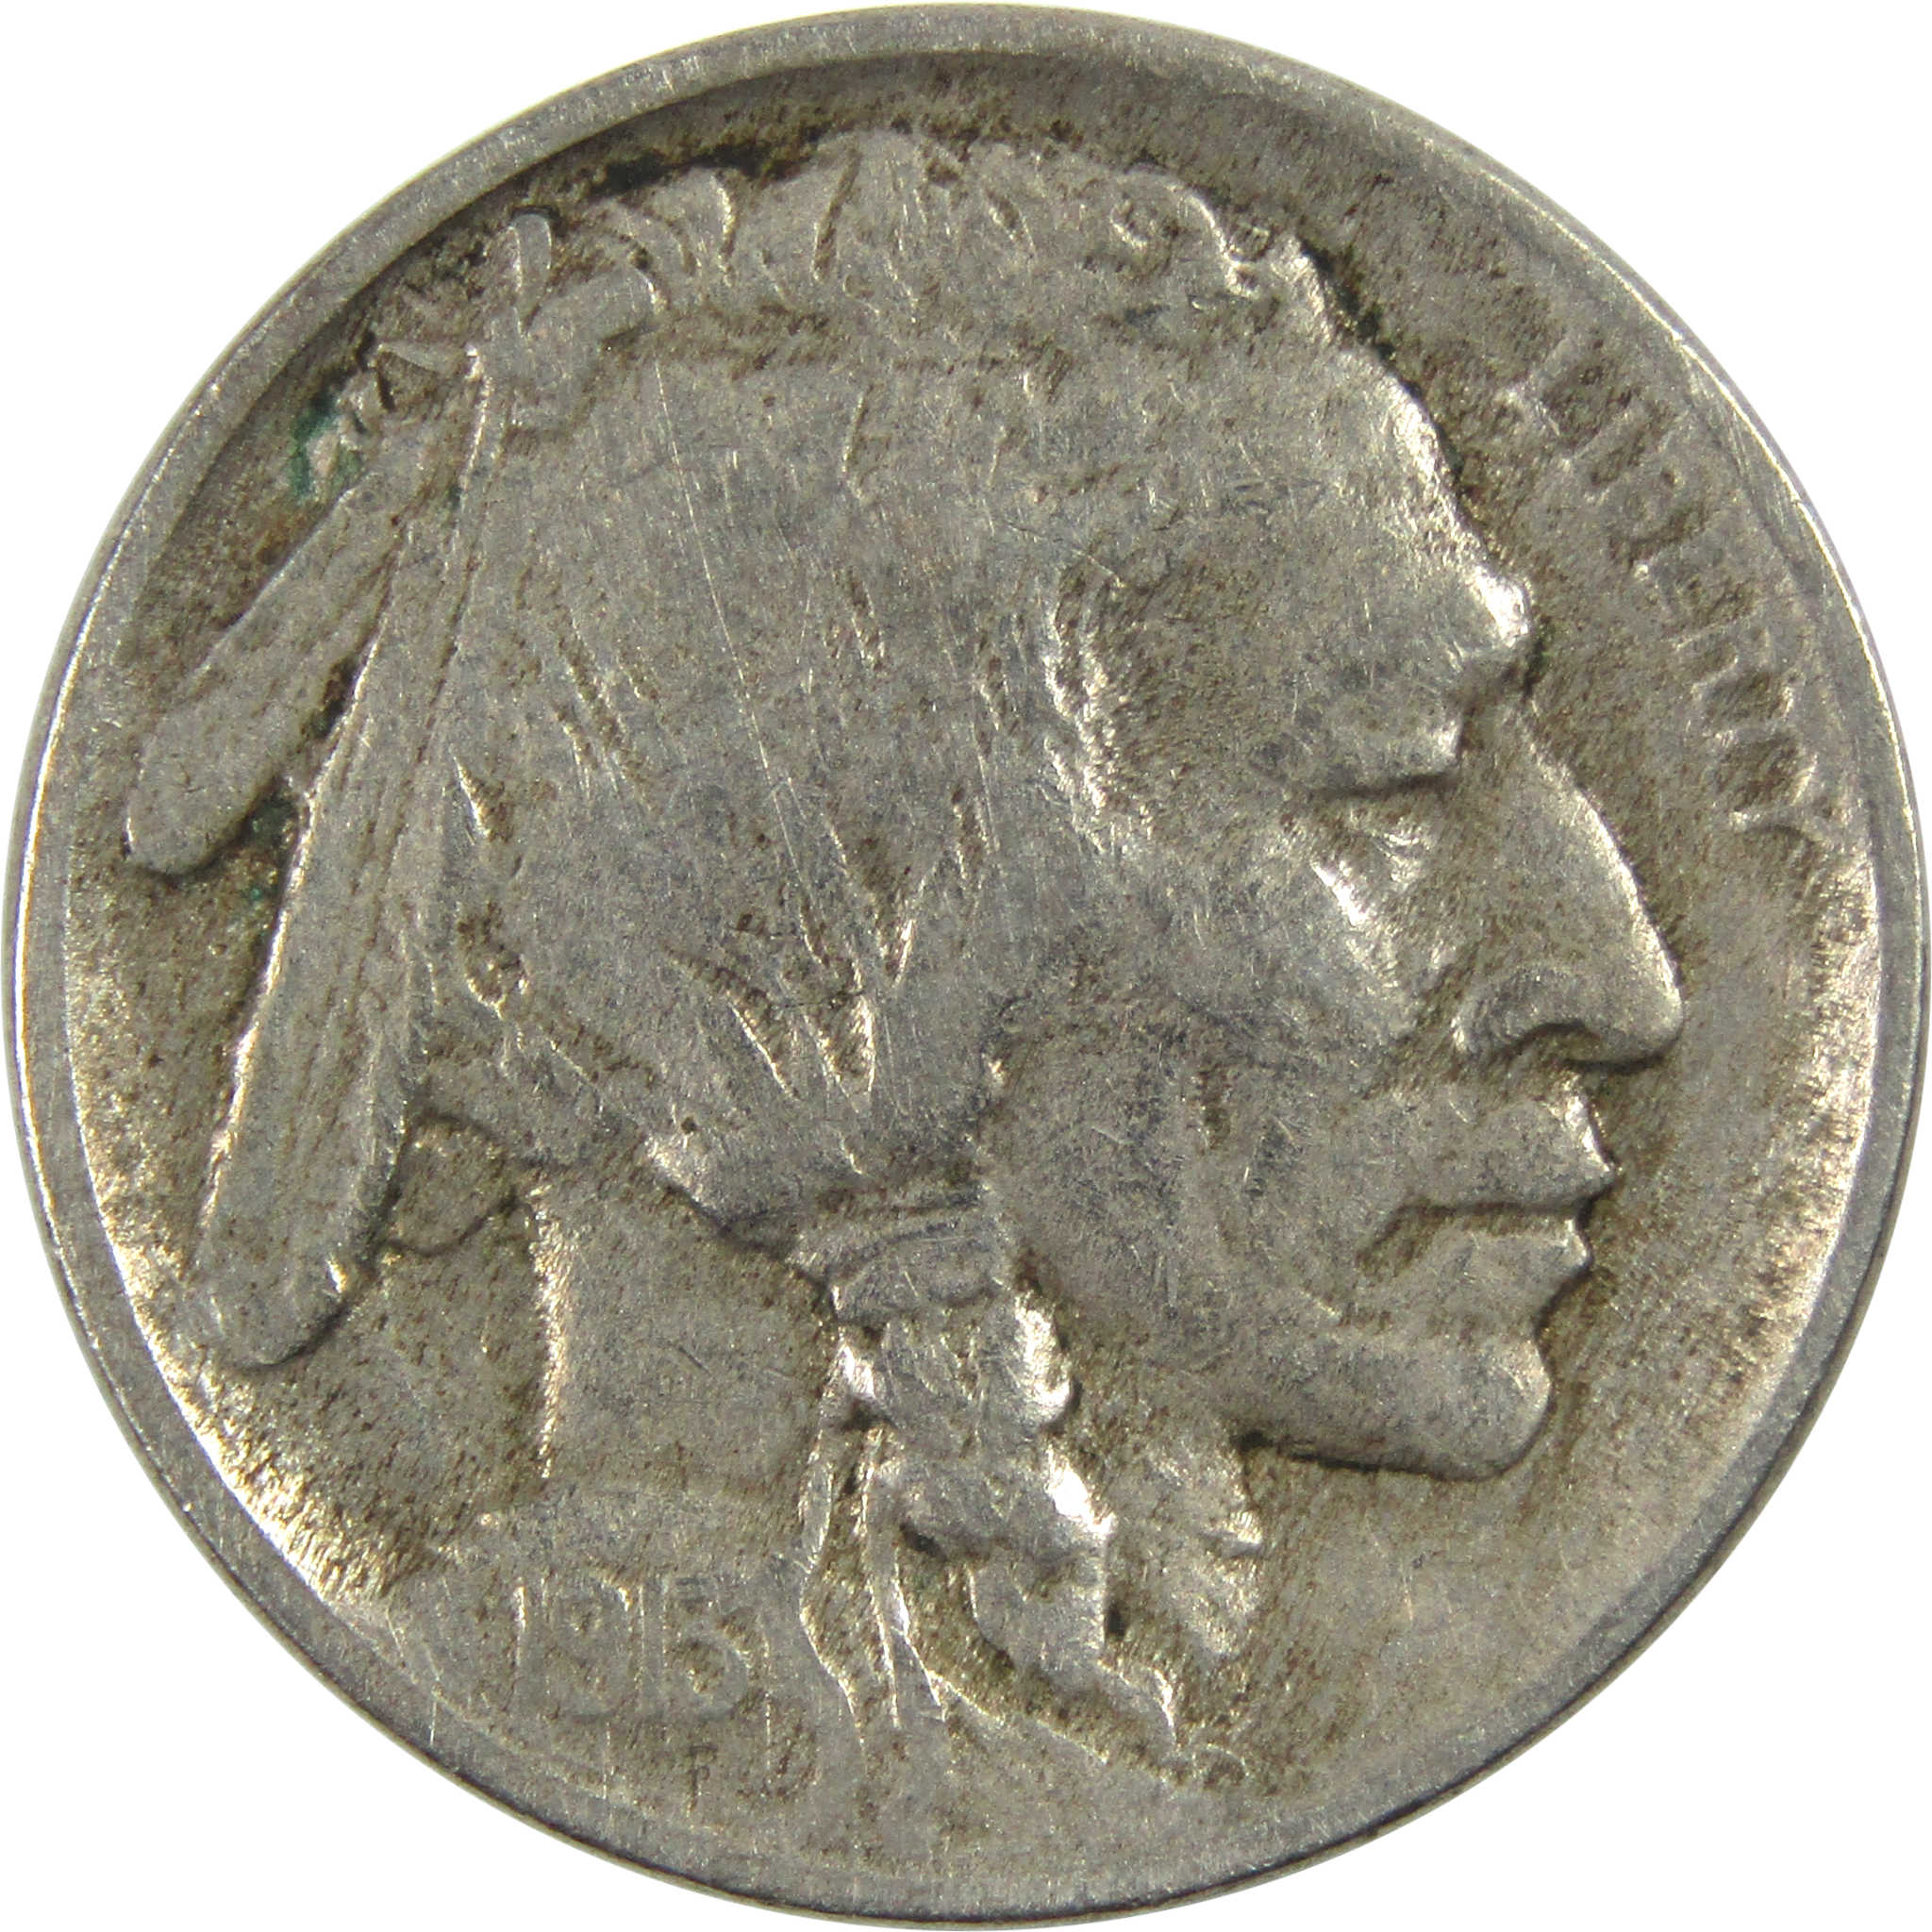 1913 Type 1 Indian Head Buffalo Nickel F Fine 5c Coin SKU:I12997